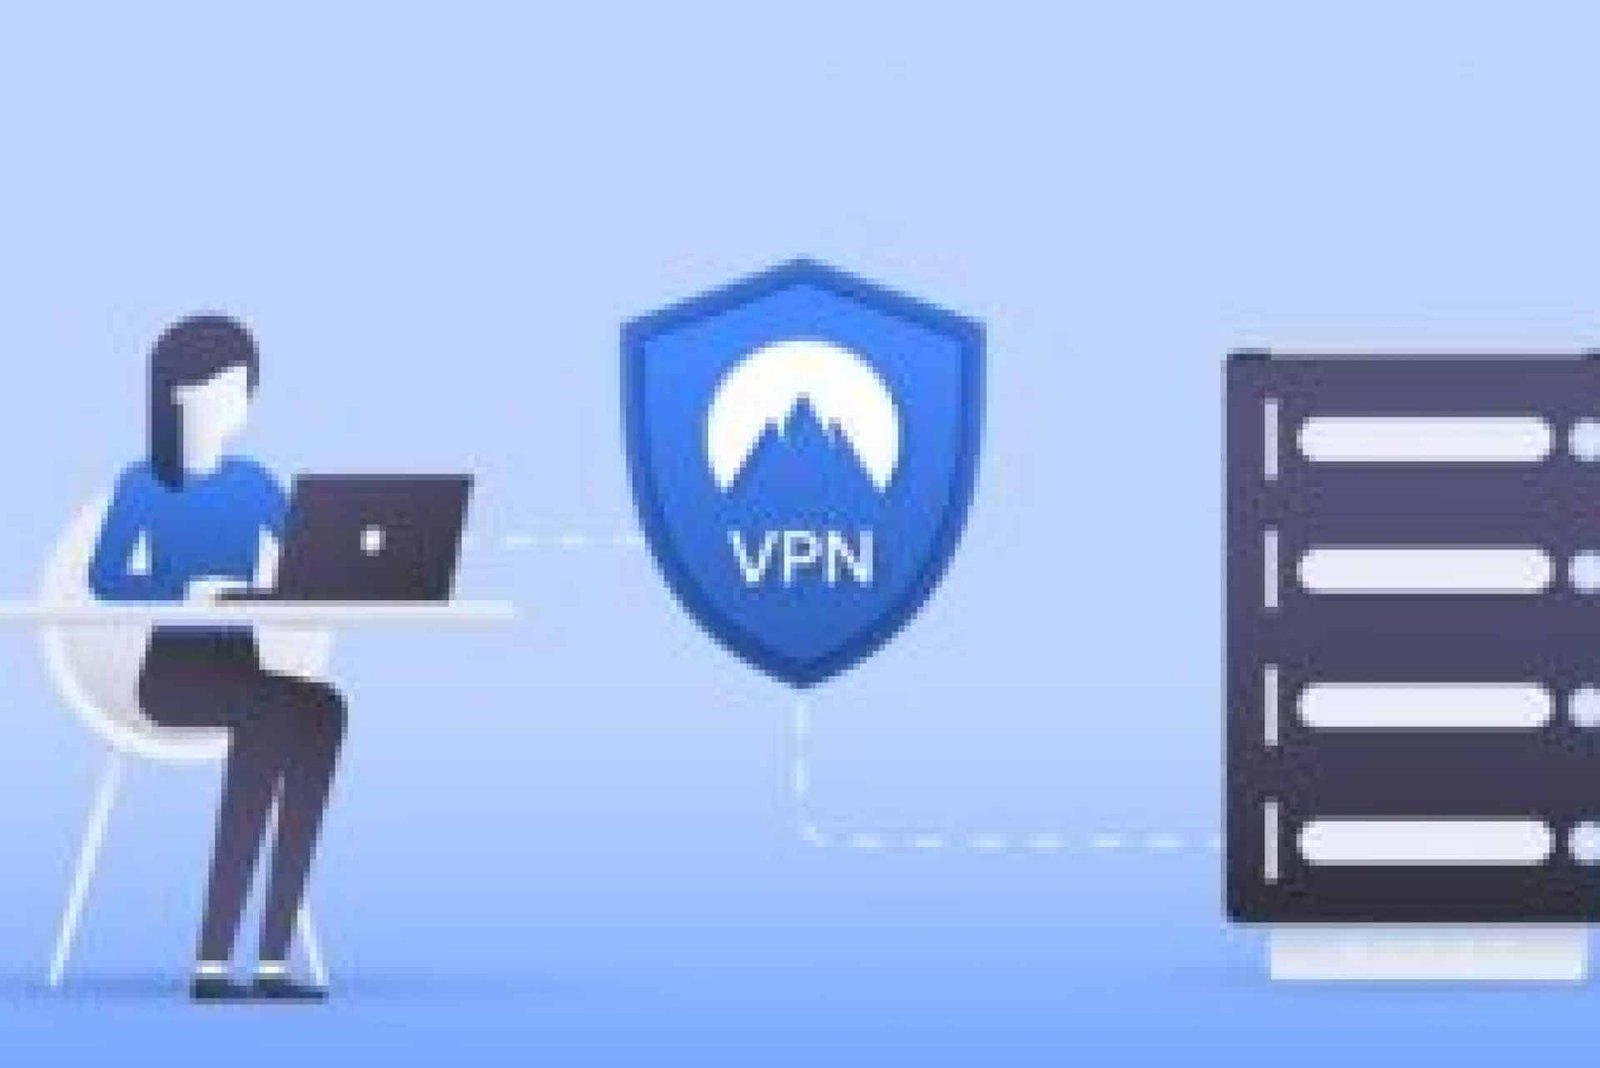 ITop VPN